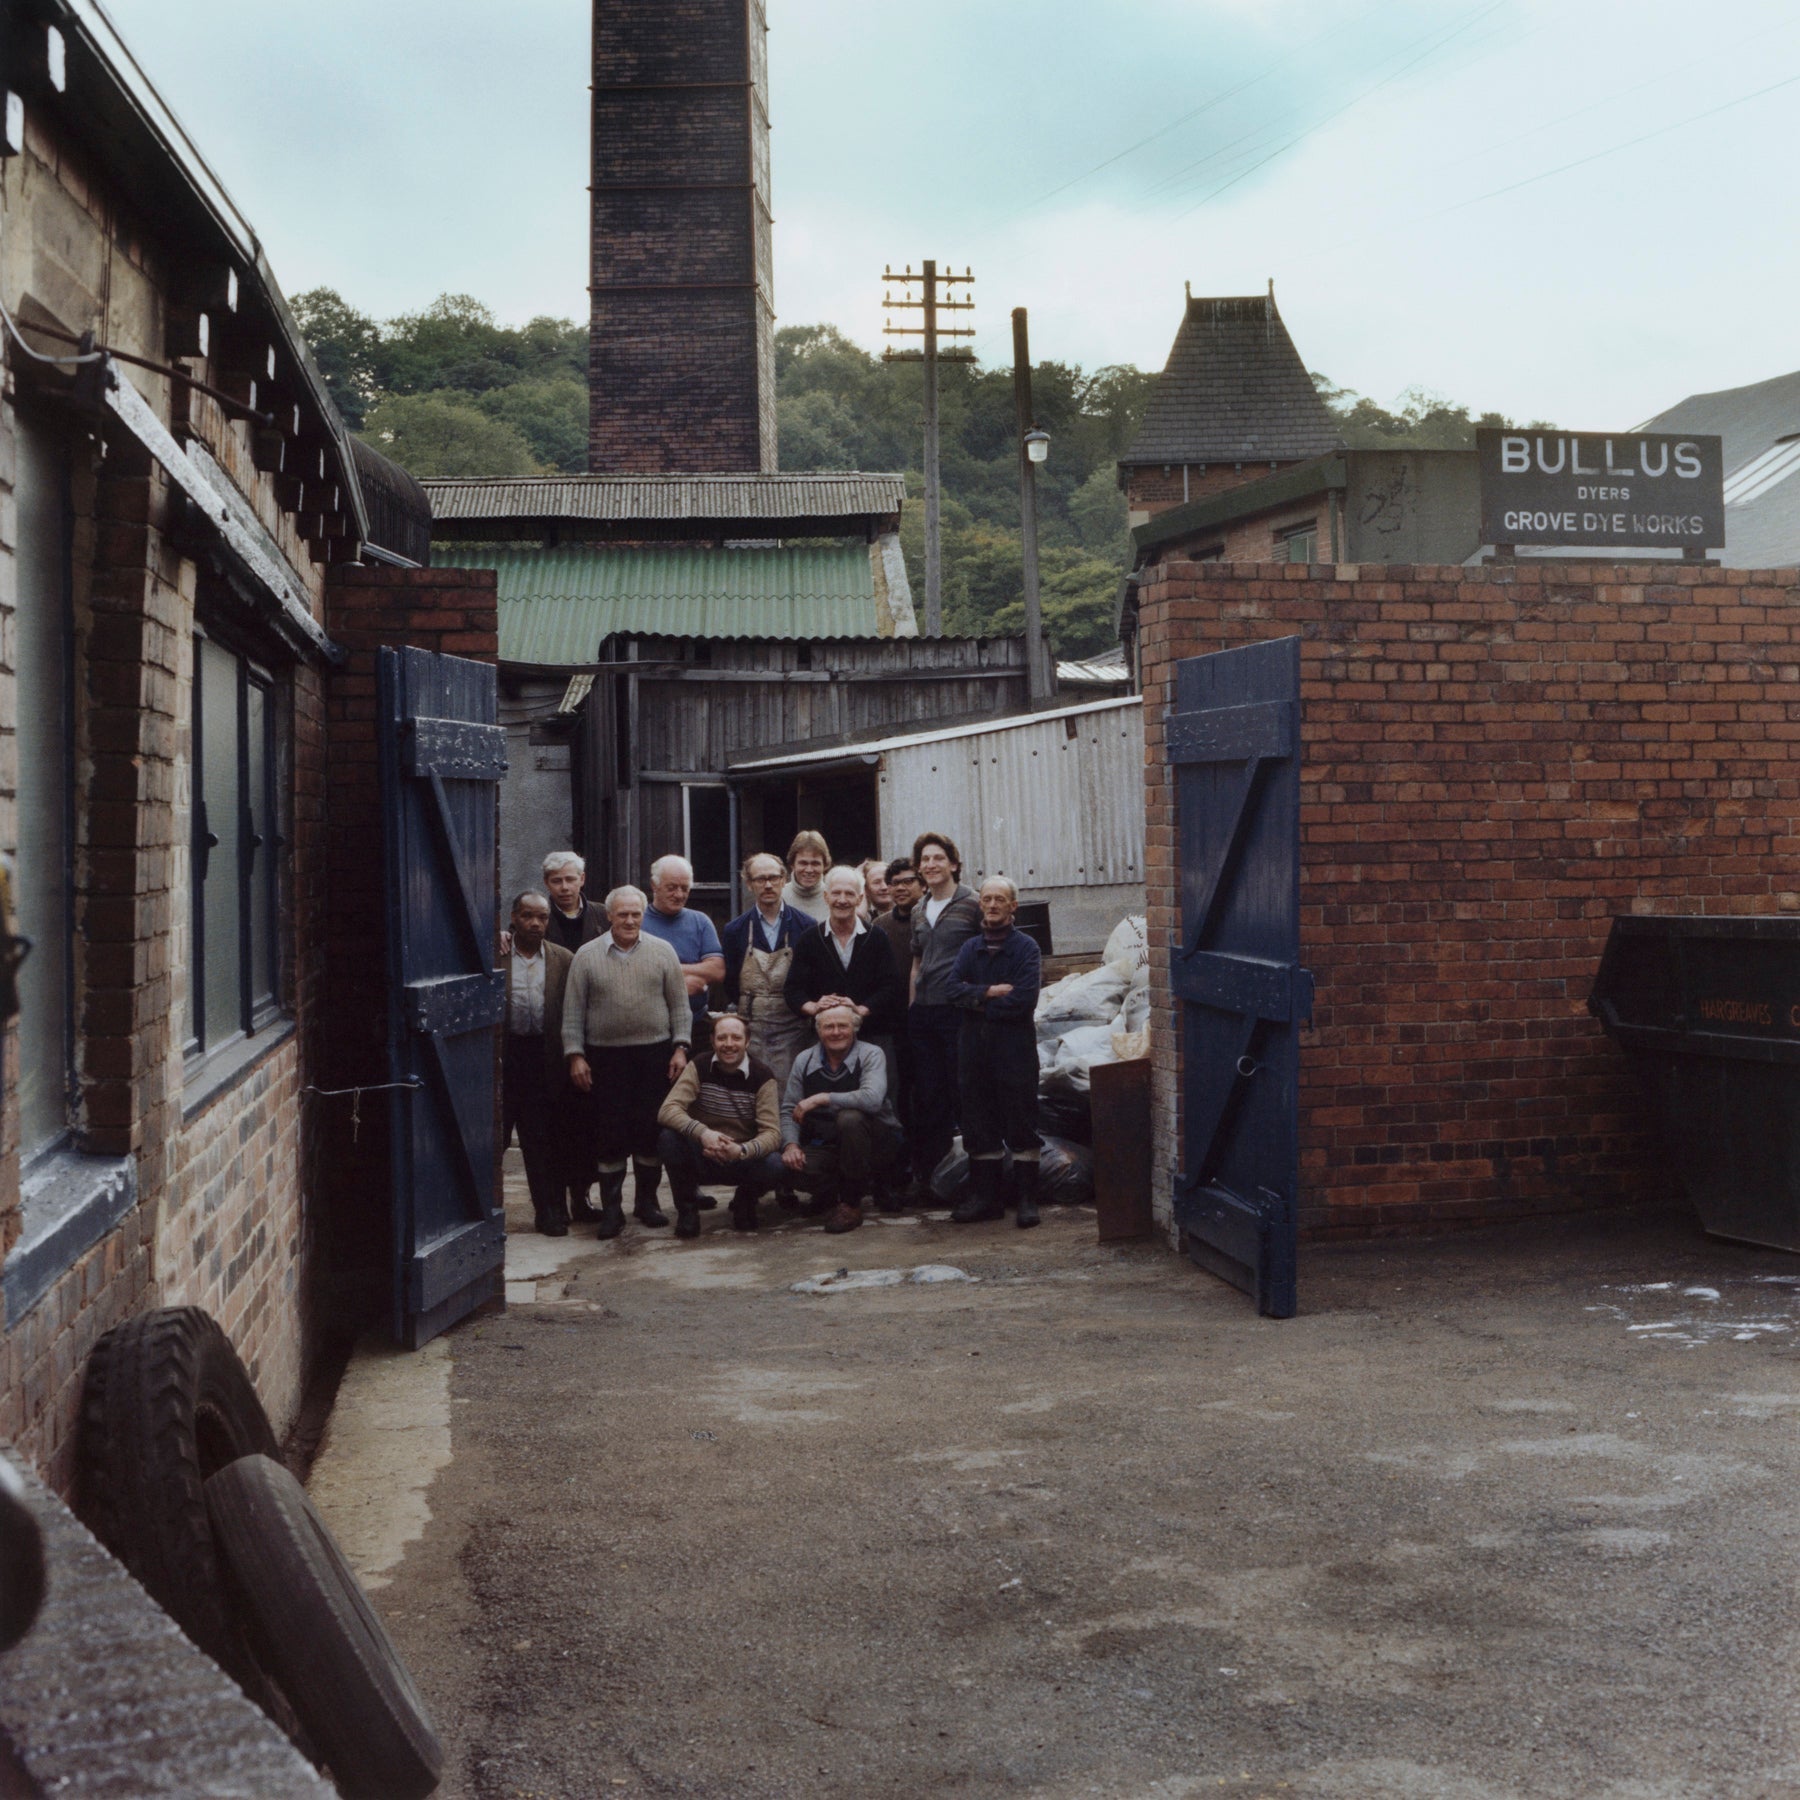 Bullus Dye Works, Meanwood Road, Leeds, 1979 - 7x9" Print